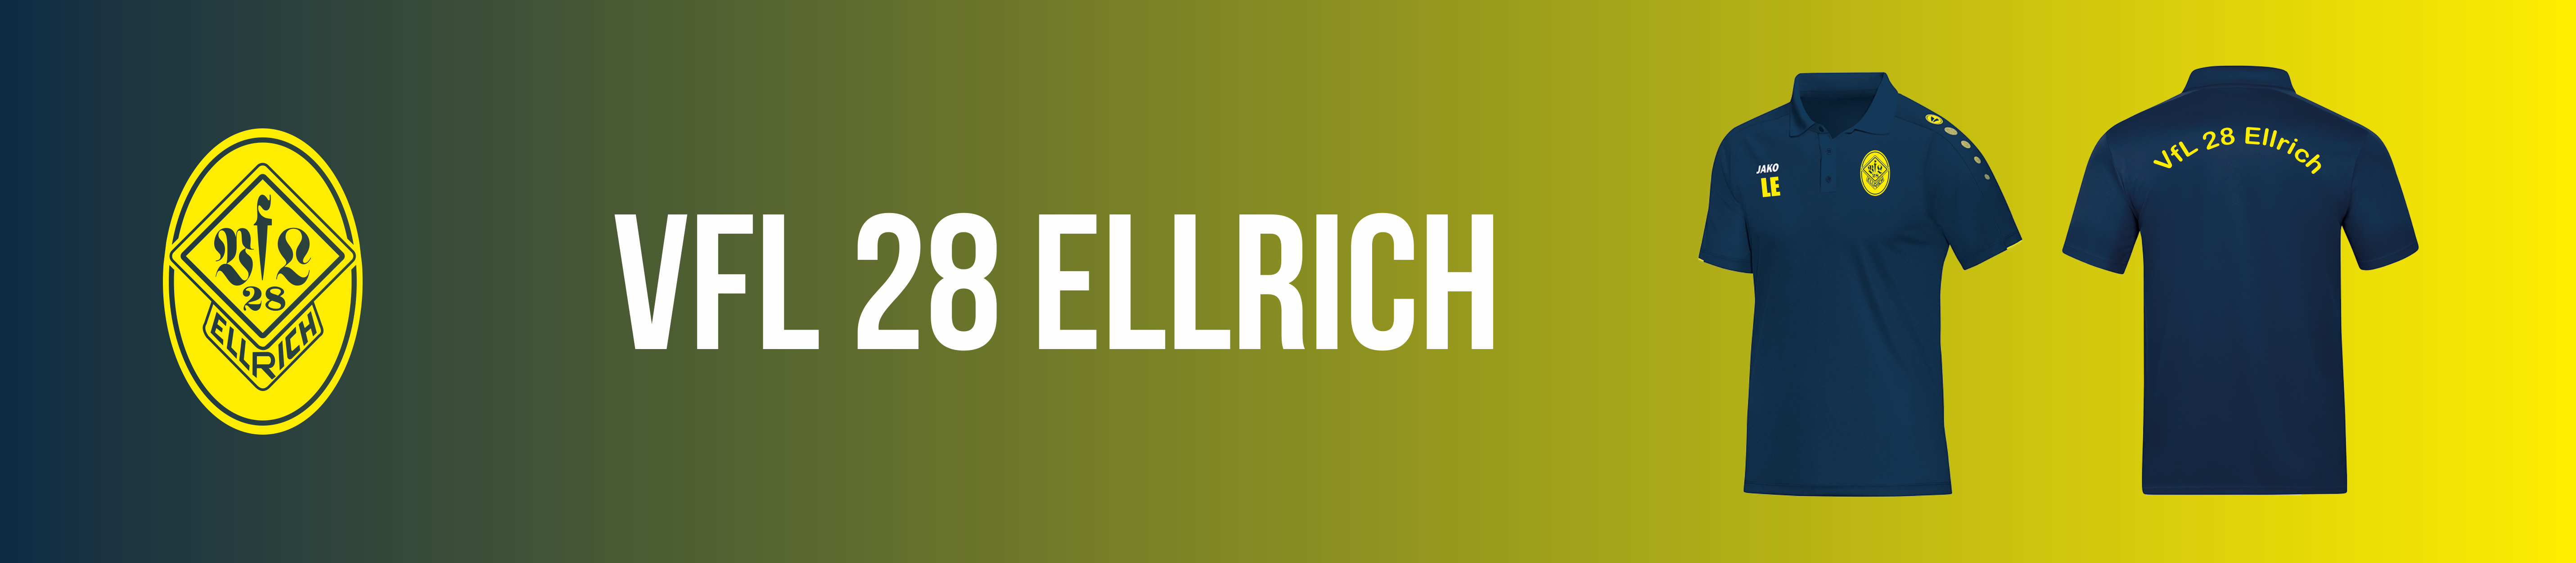 VfL 28 Ellrich Title Image